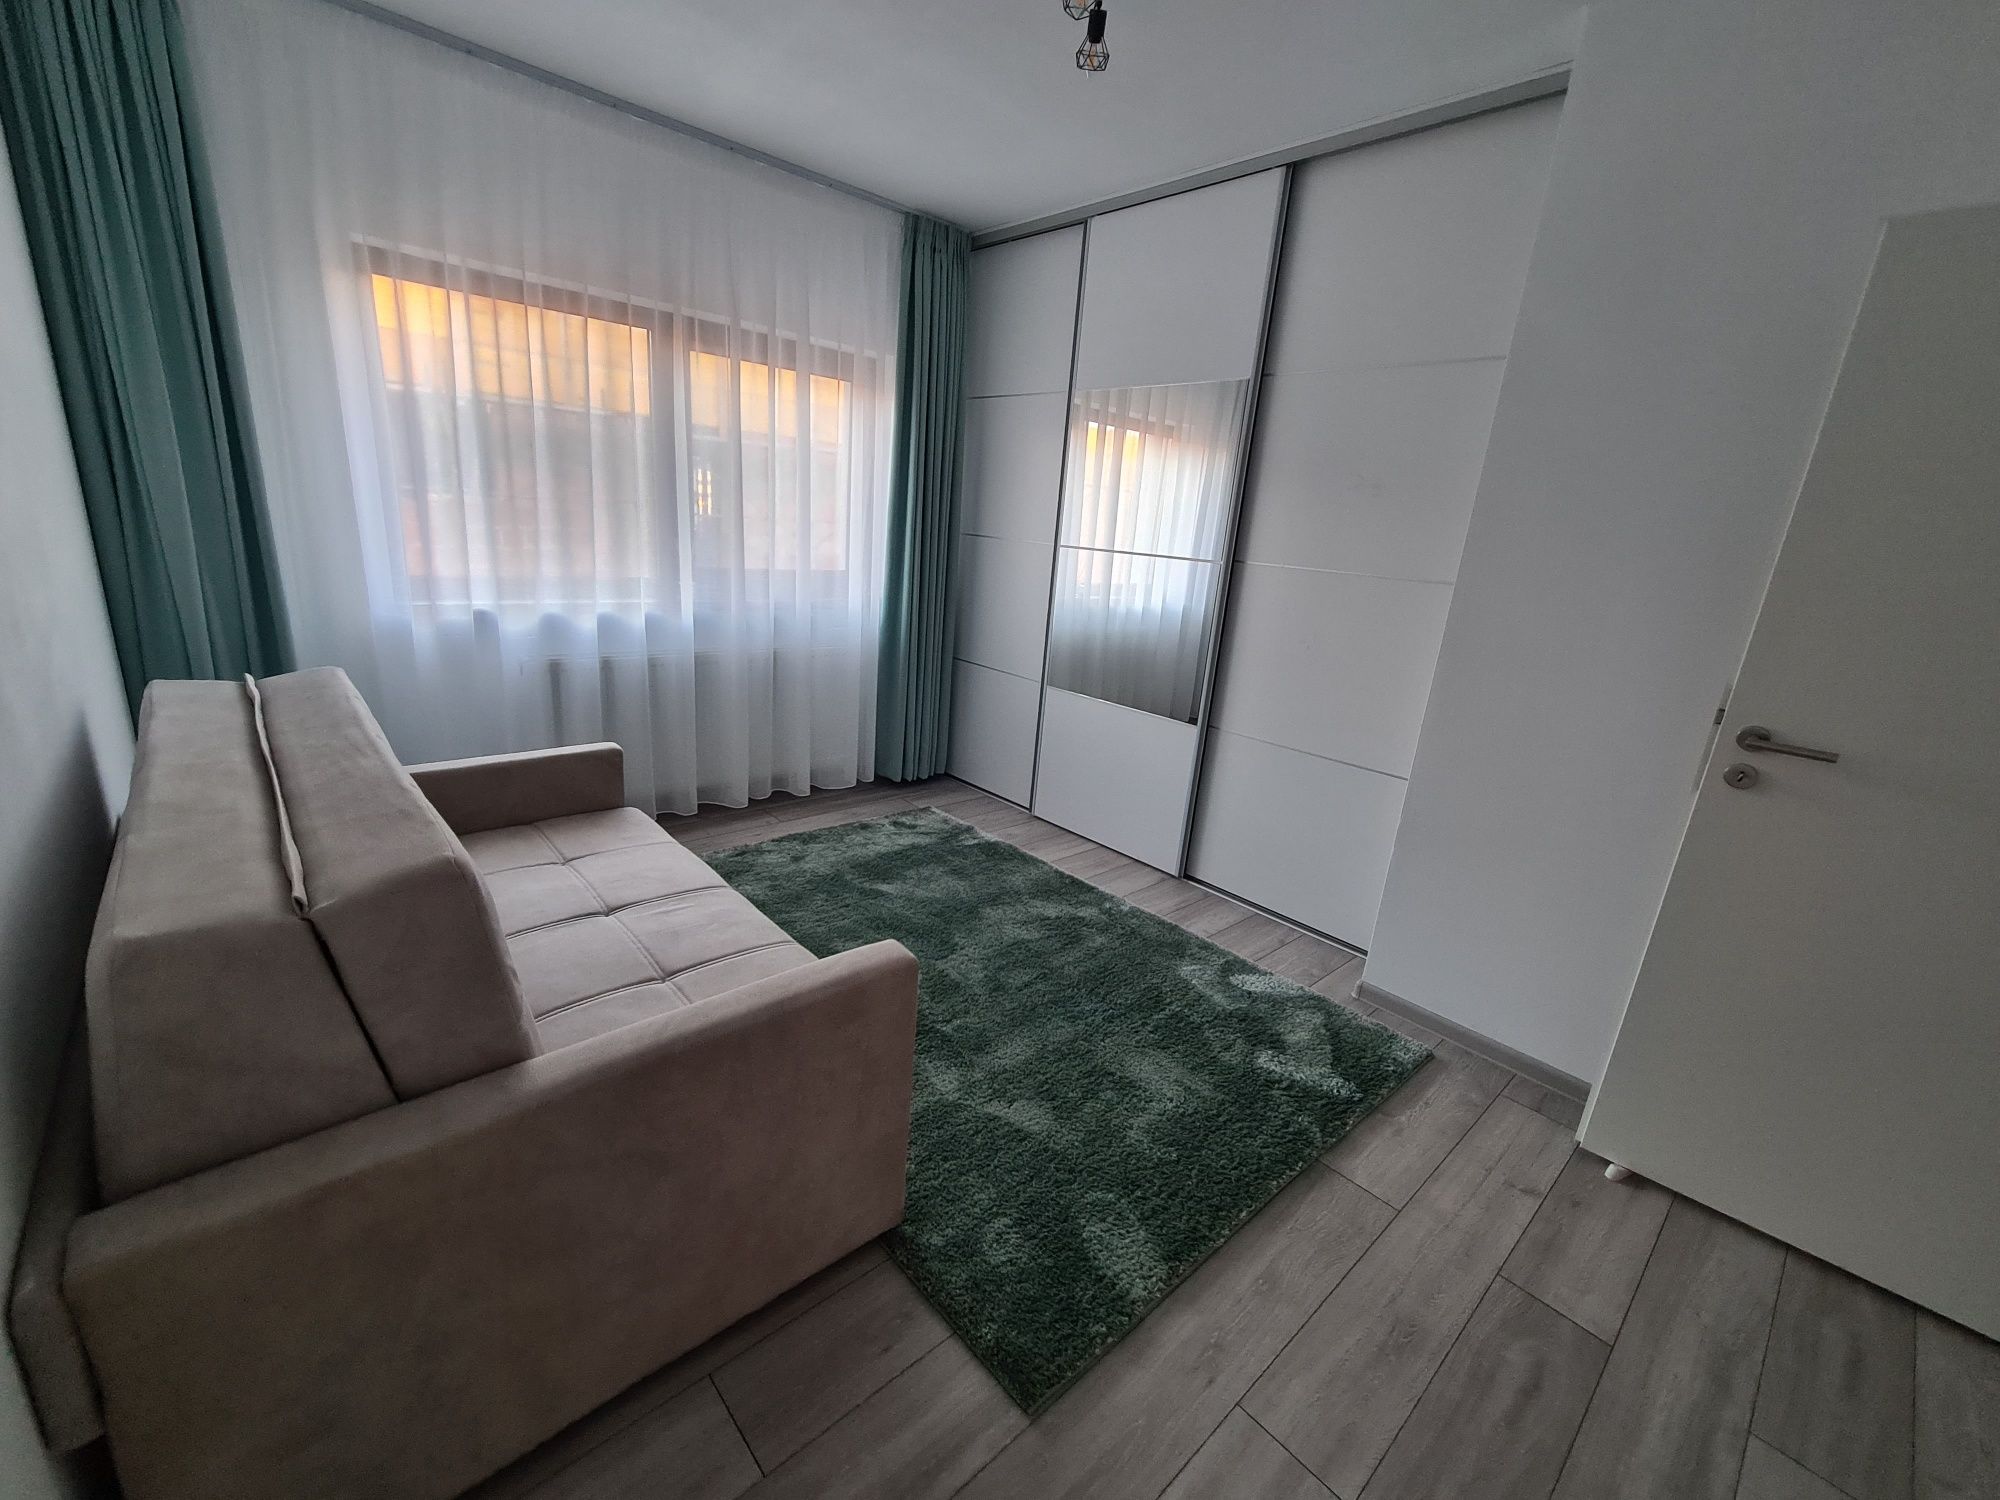 Apartament 3 camere decomandate prin calda linie cromatica, utilat si mobilat, Sanpetru, Brasov